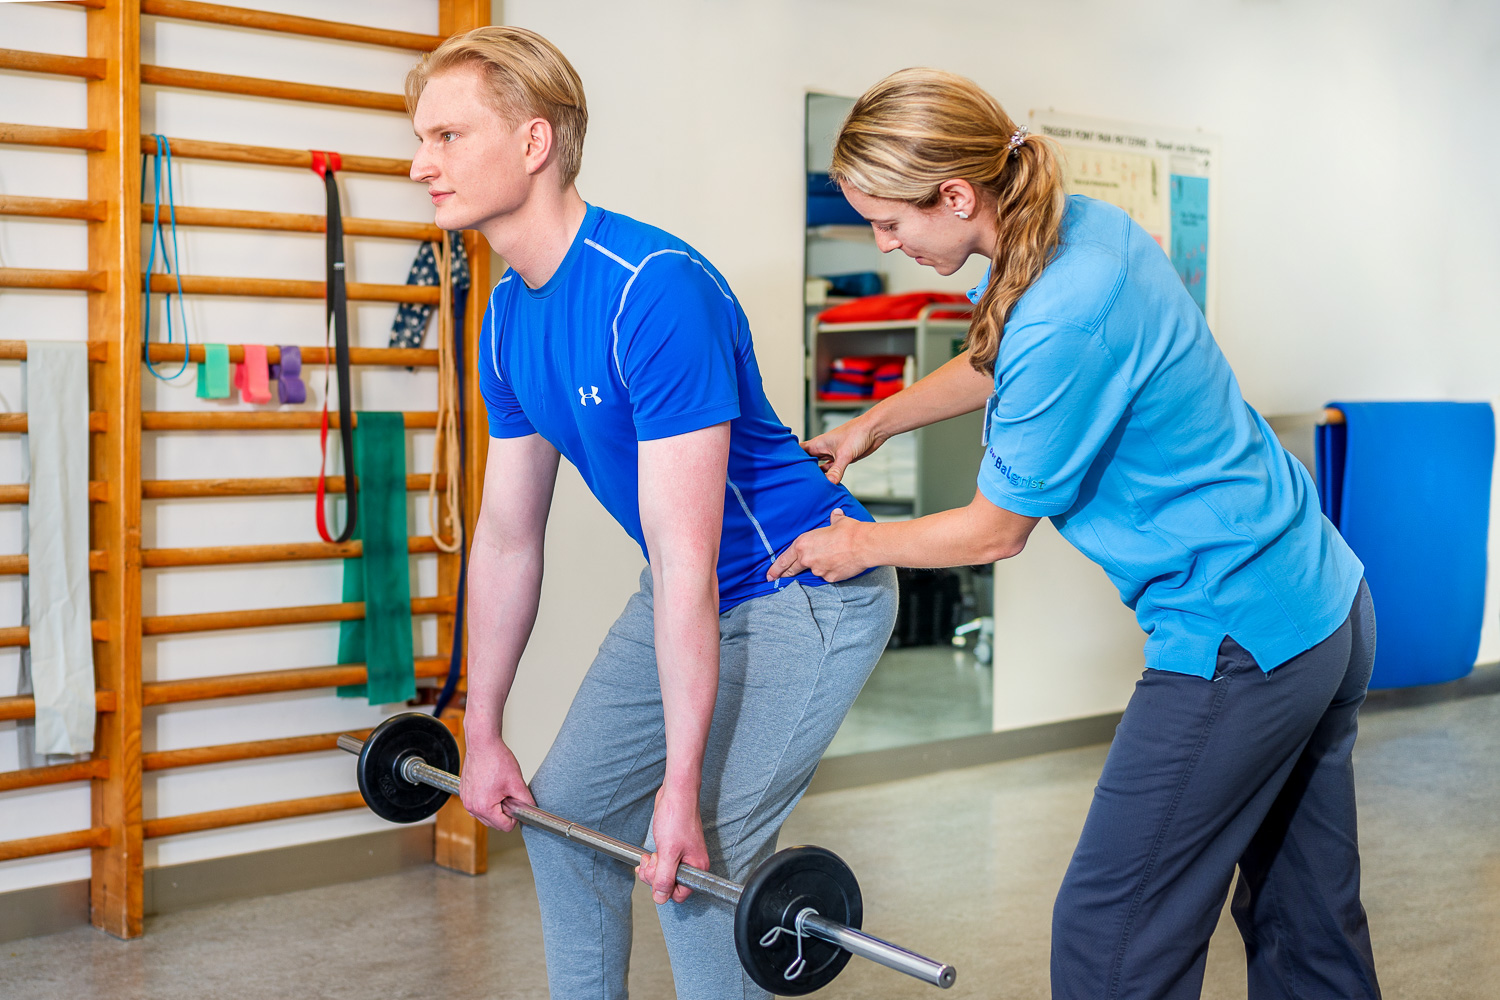 Die Physiotherapeutin achtet auf eine korrekte Haltung des Patienten, der mit einer Langhantel die Rückenübung Kreuzheben ausführt.